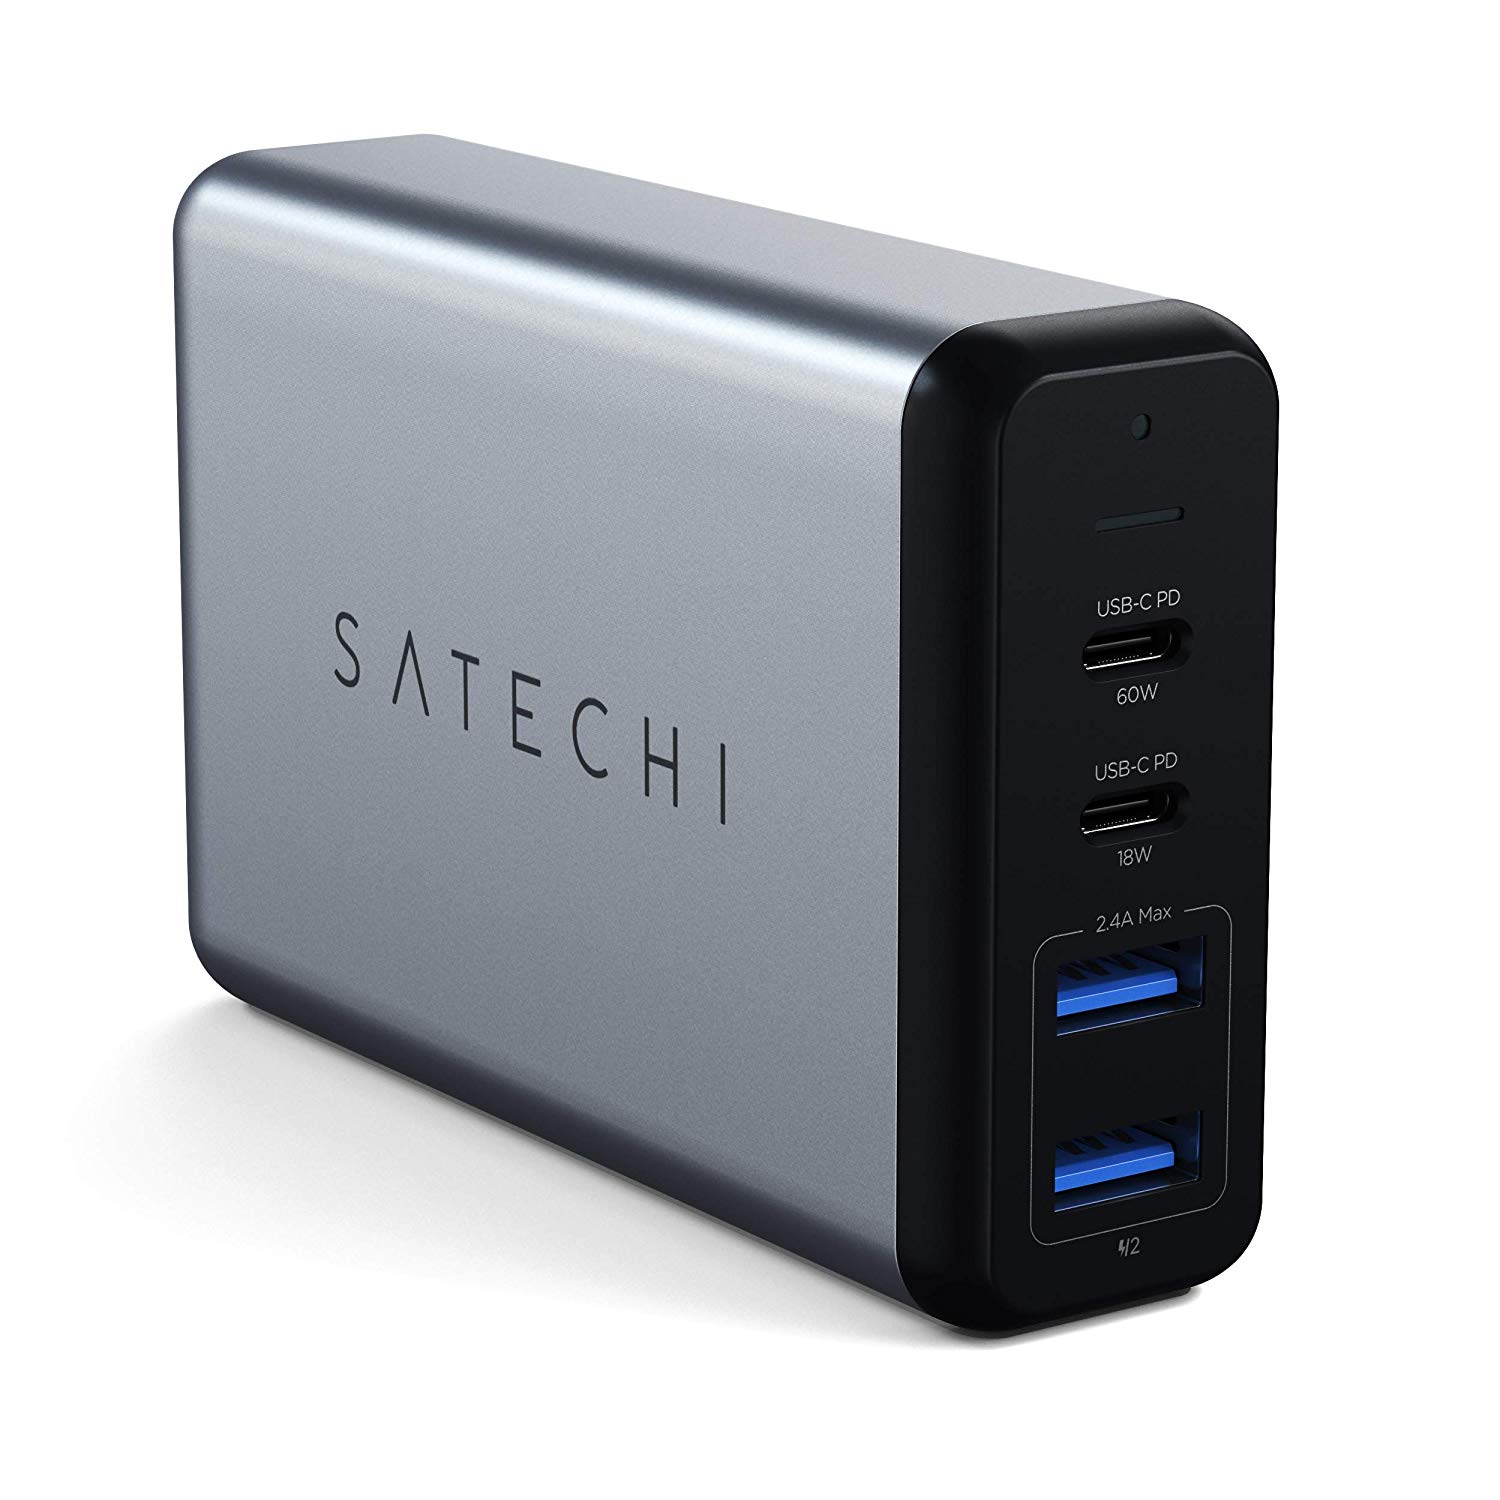 Satechi、USB-C PDポートを2つ搭載したUSB充電器｢75W デュアル トラベルチャージャー｣を発売 － 15％オフの初回限定セールも開催中